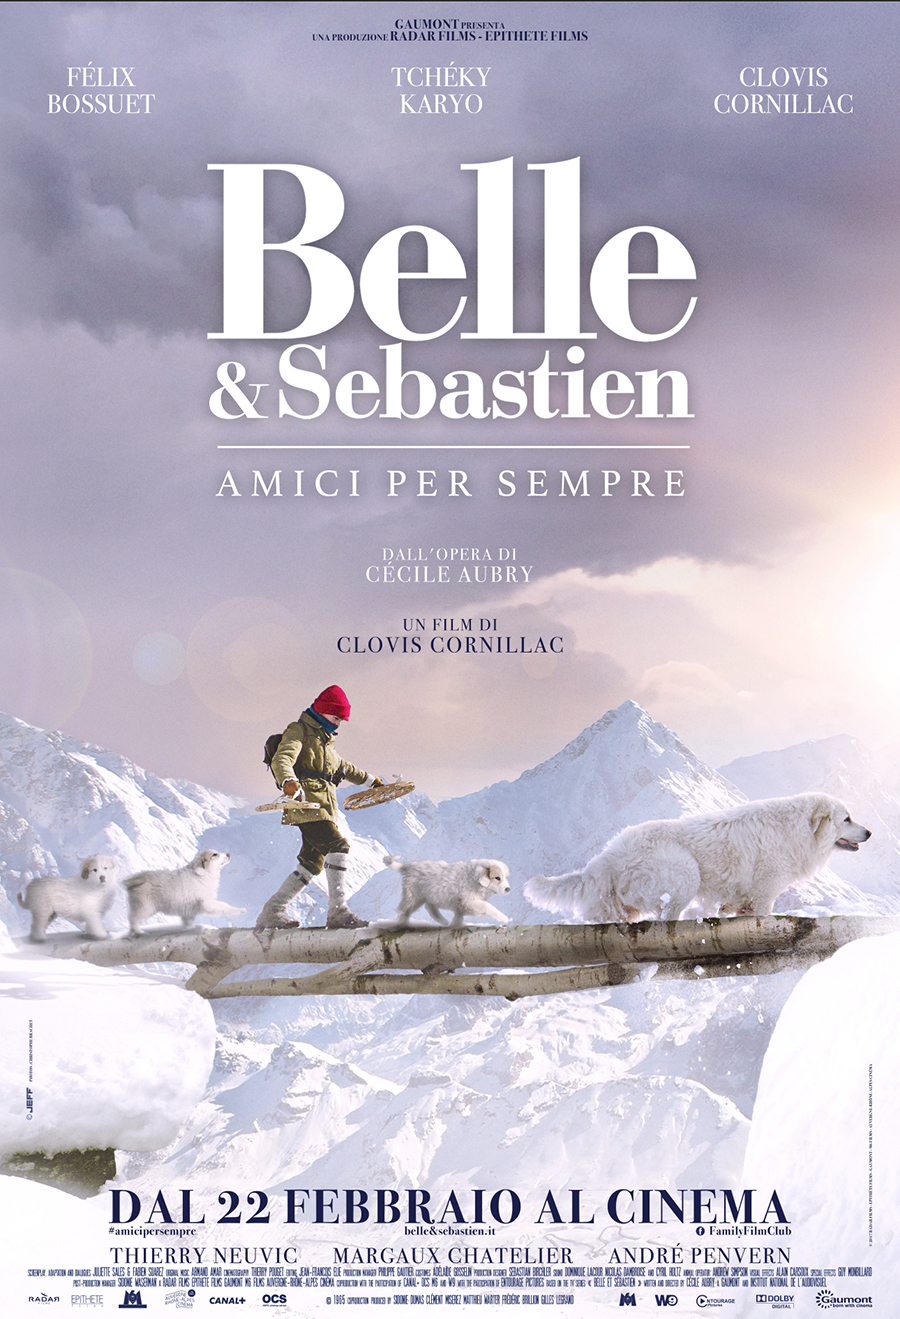 Belle & Sebastien di nuovo al cinema dal 22 febbraio